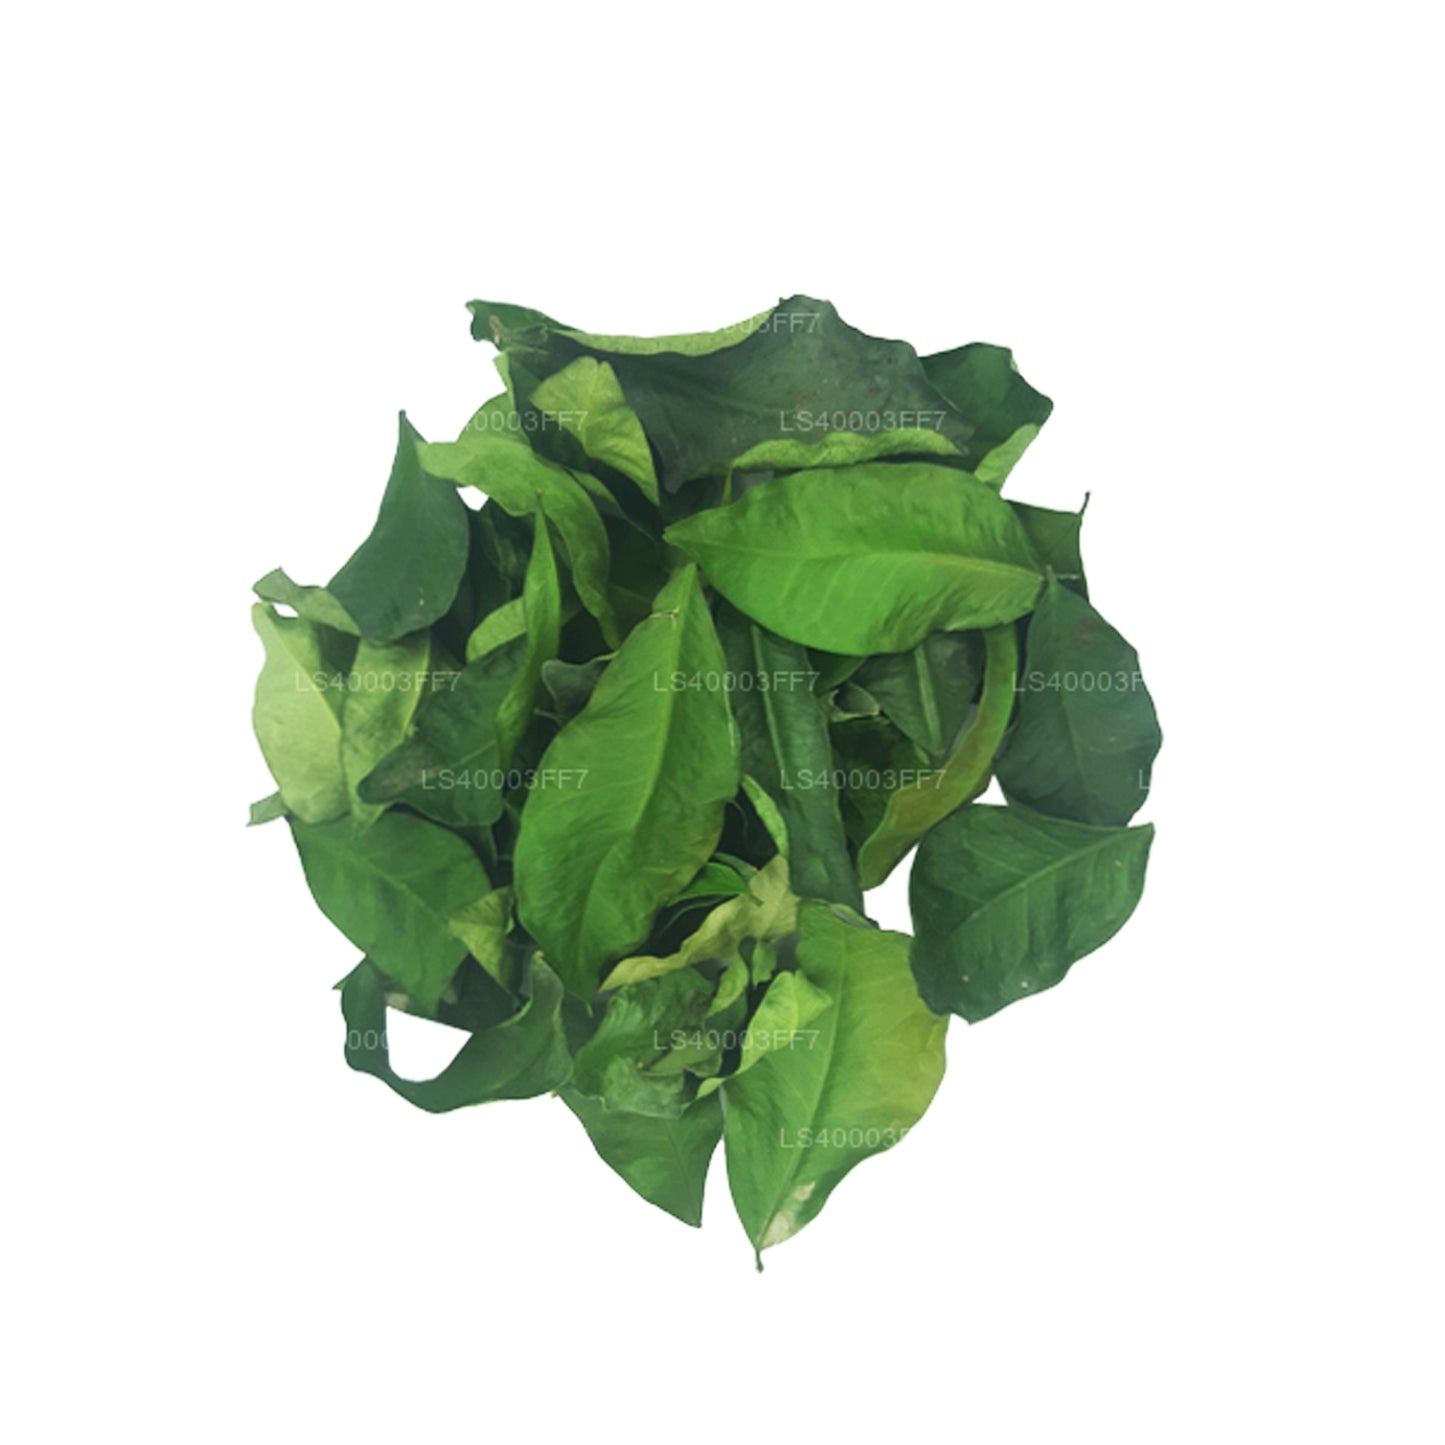 Lakpura Dehydrierte Yaki Naran-Blätter (Atalantia Ceylanica) (100 g)